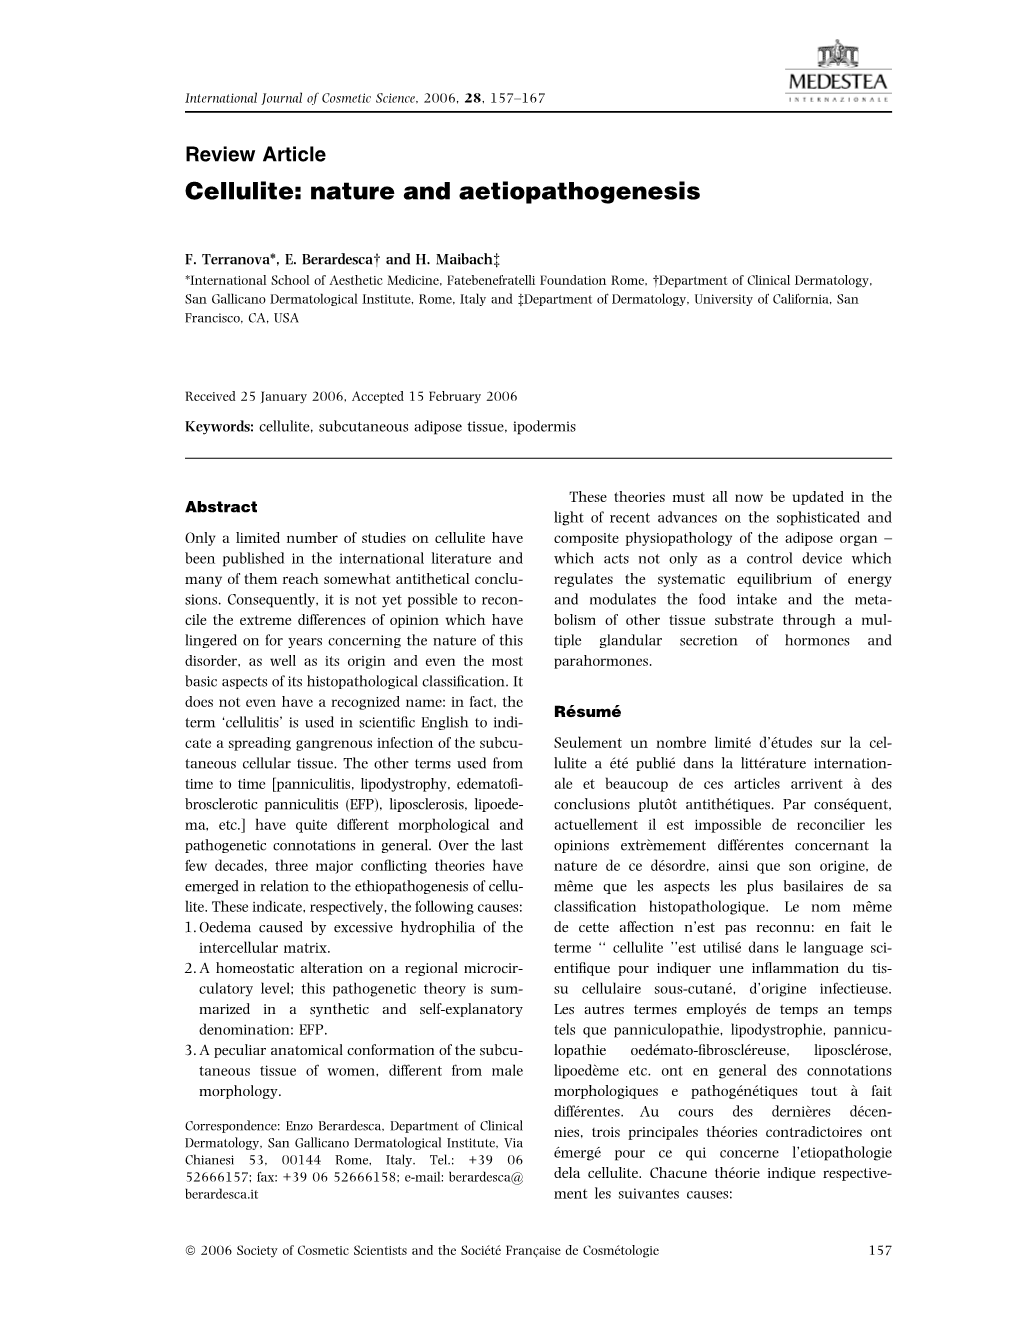 Cellulite: Nature and Aetiopathogenesis